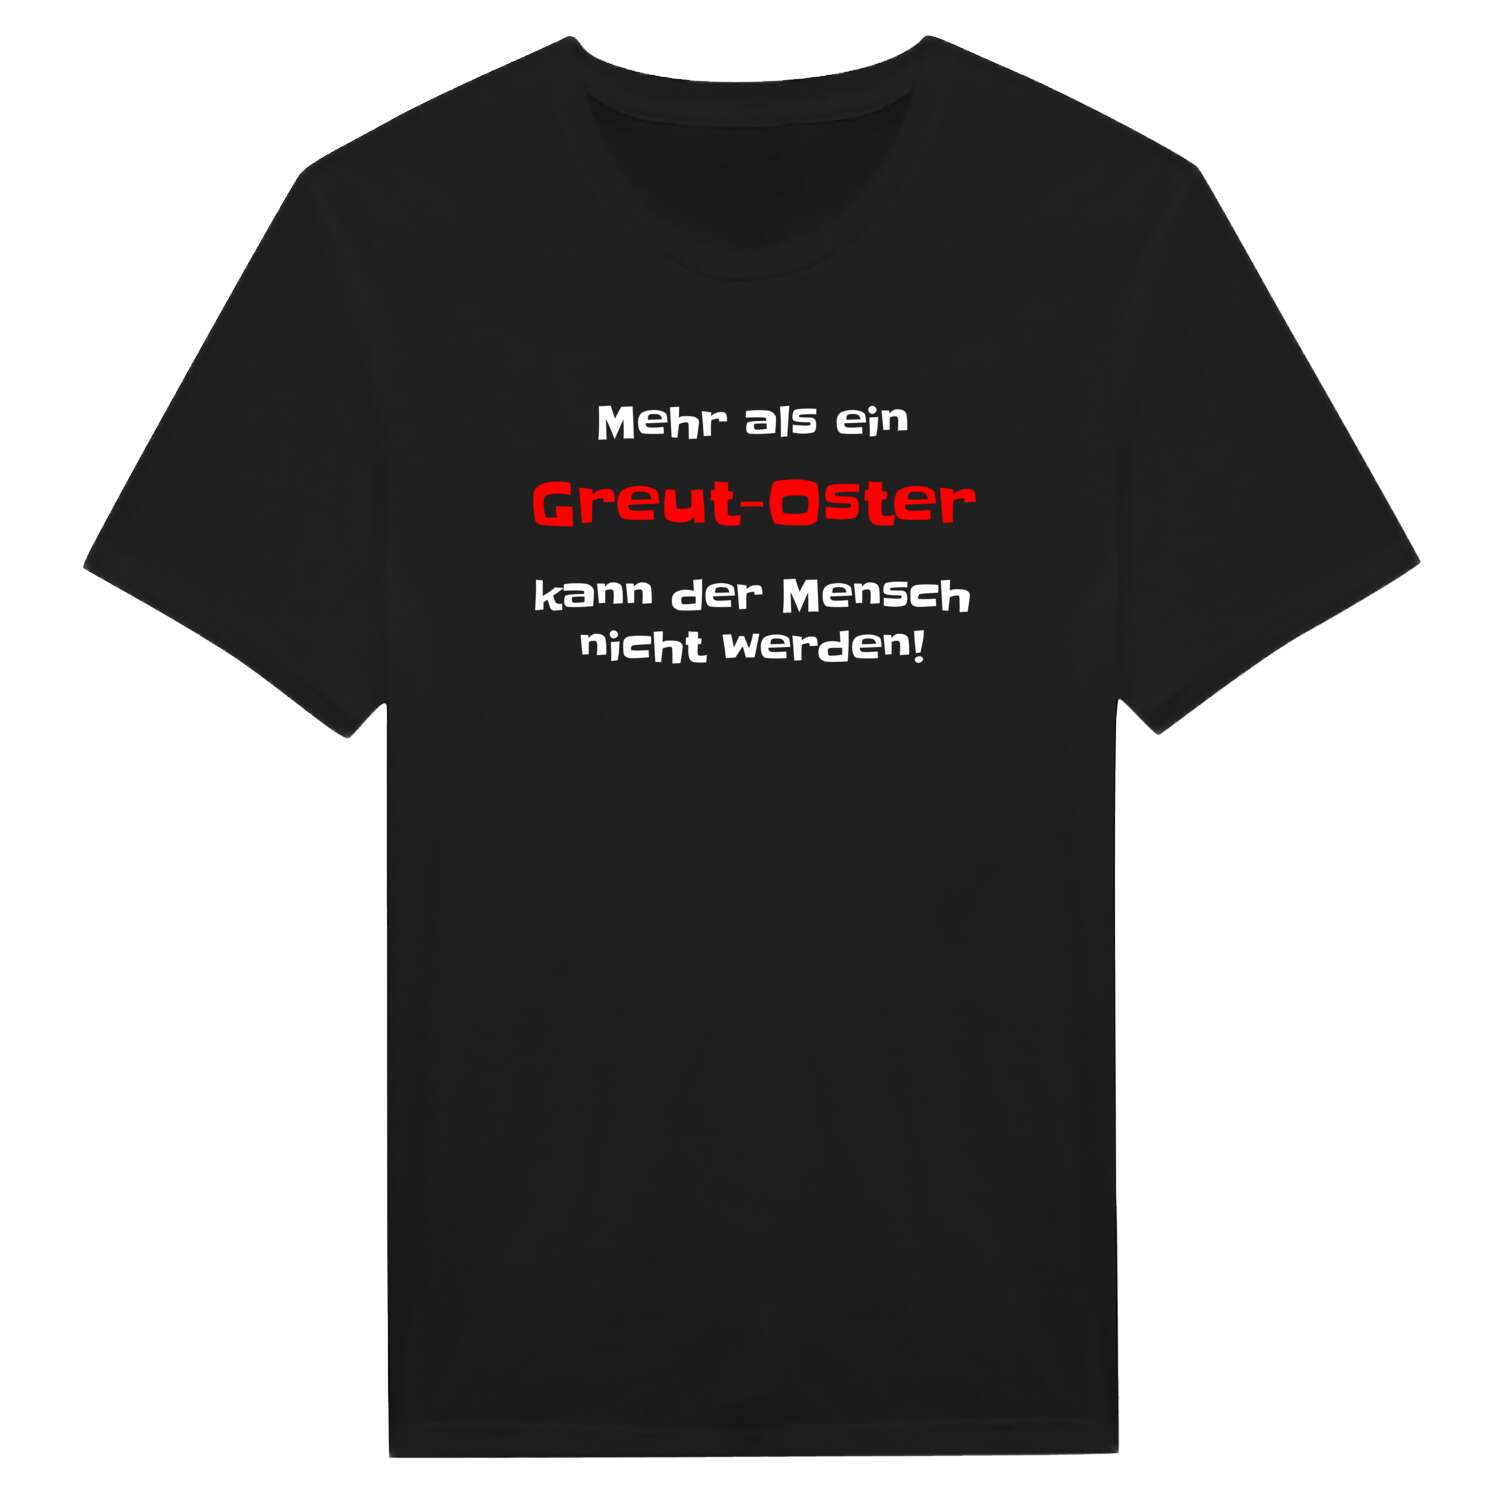 Greut-Ost T-Shirt »Mehr als ein«